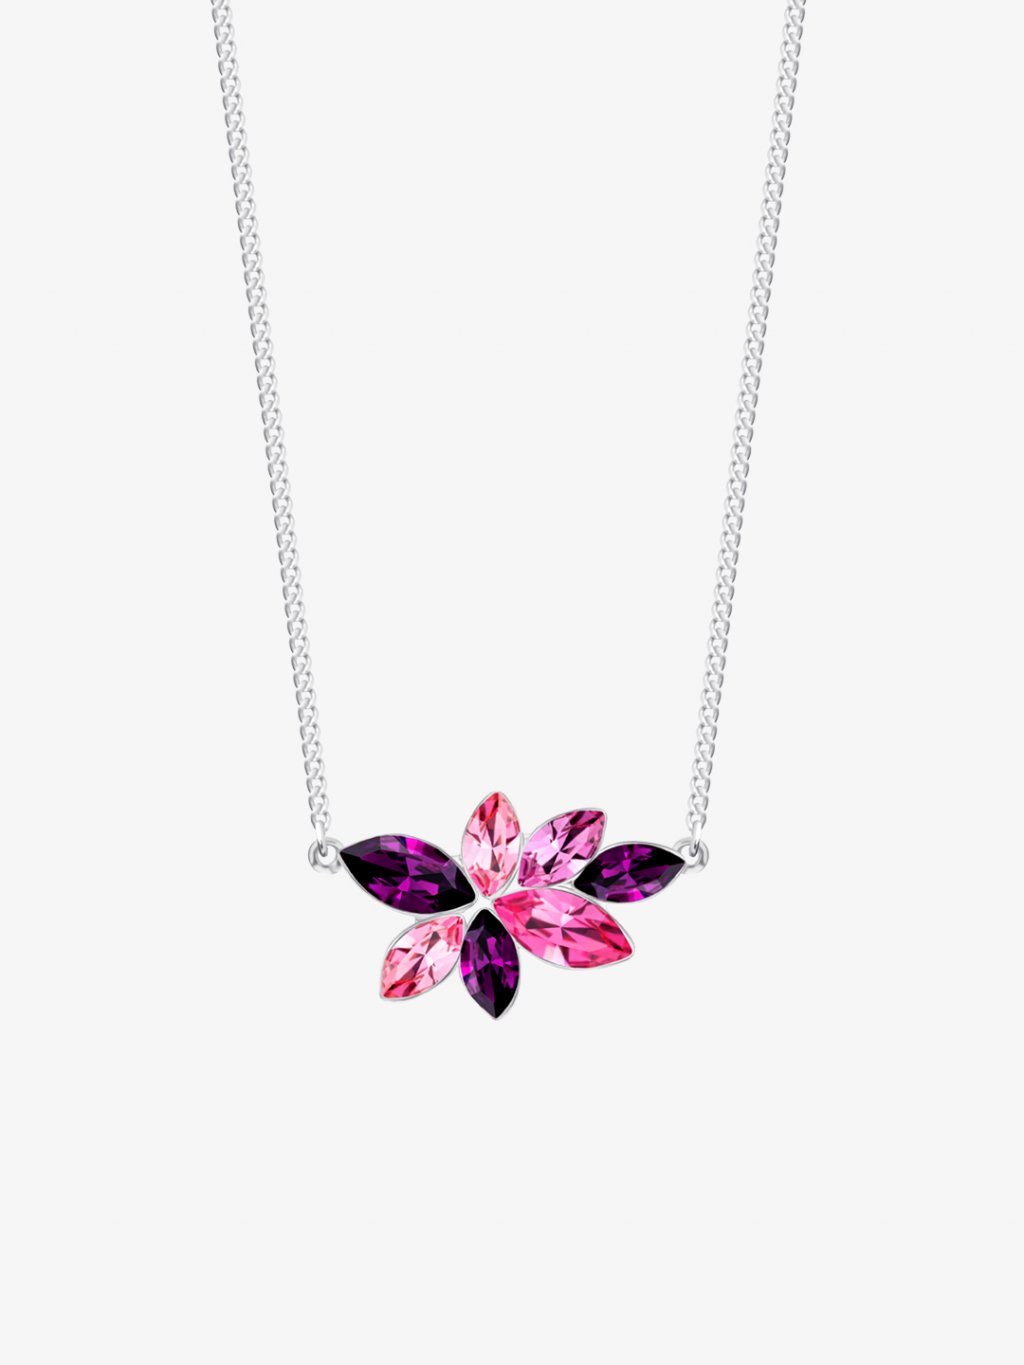 Bižuterní náhrdelník Flying Gem by Veronika, kolibřík s českým křišťálem Preciosa, jednoduchý, růžový